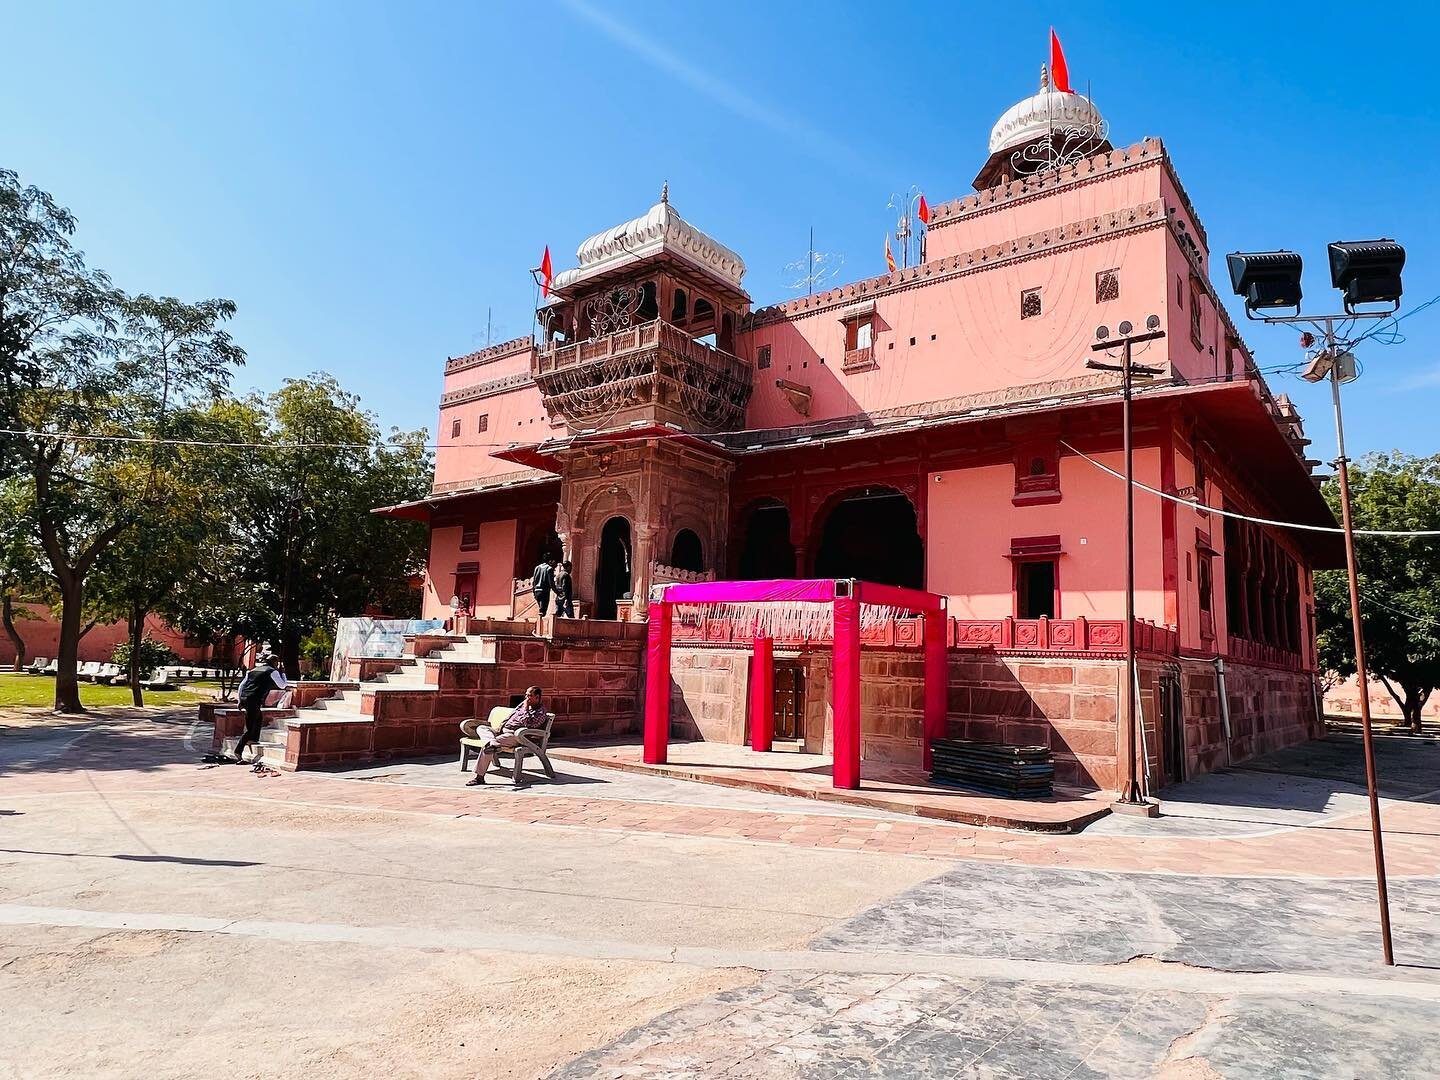 Shiv baadi - Shiv temple, Bikaner Rajasthan #shivratri #mahadev #mahashivratri @guddivyasgautam @therounakvyas @vyas.shipra